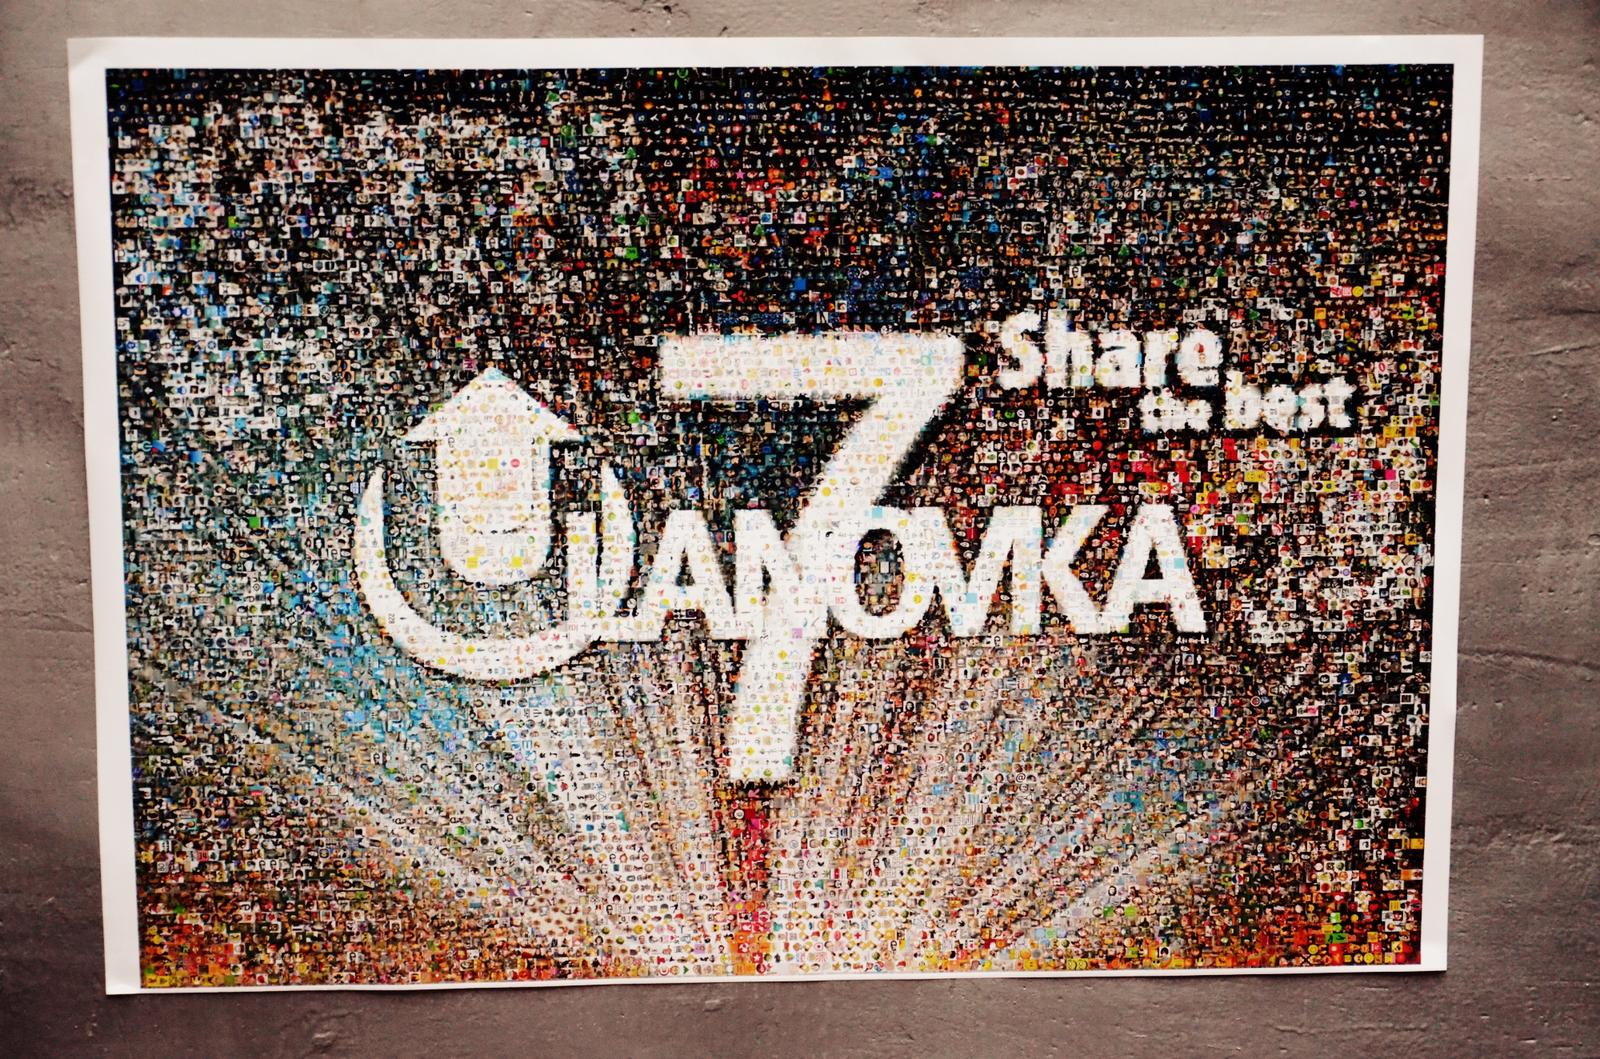 Ulanovka 7 years - Share the best